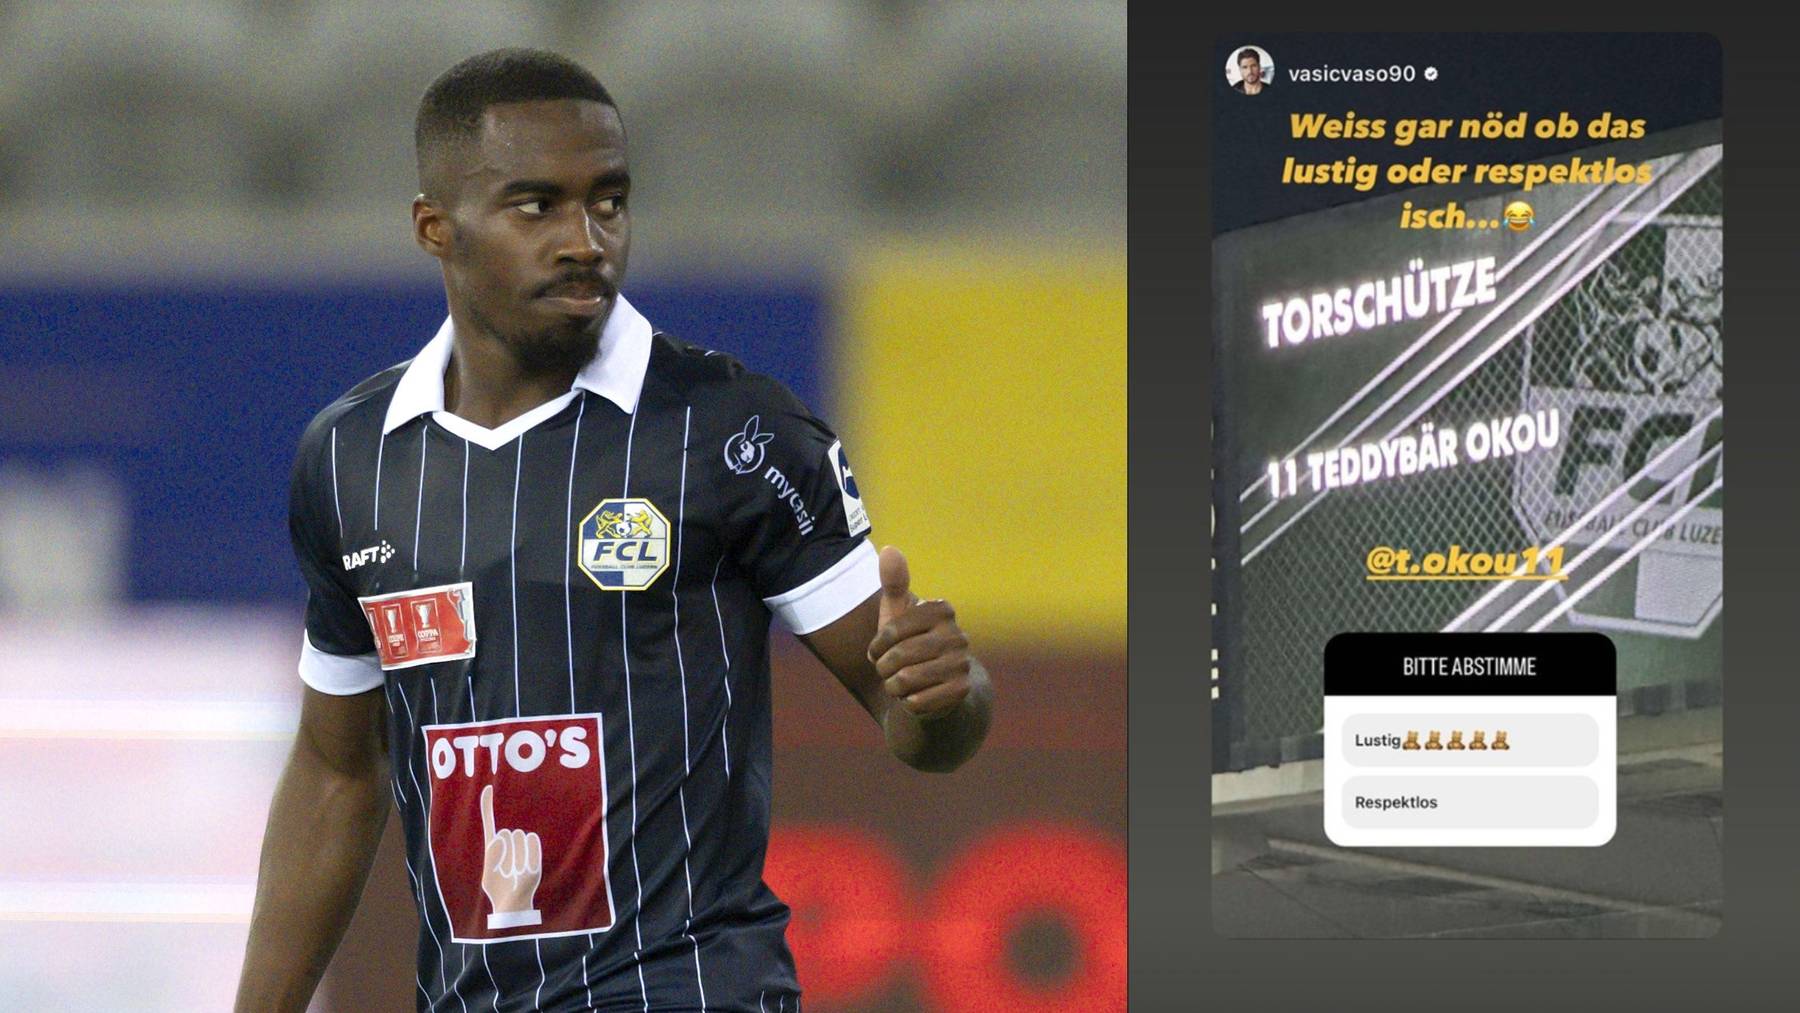 FCL-Spieler Teddy Okou wurde gegen Thun im Stadion als «Teddybär Okou» bezeichnet.